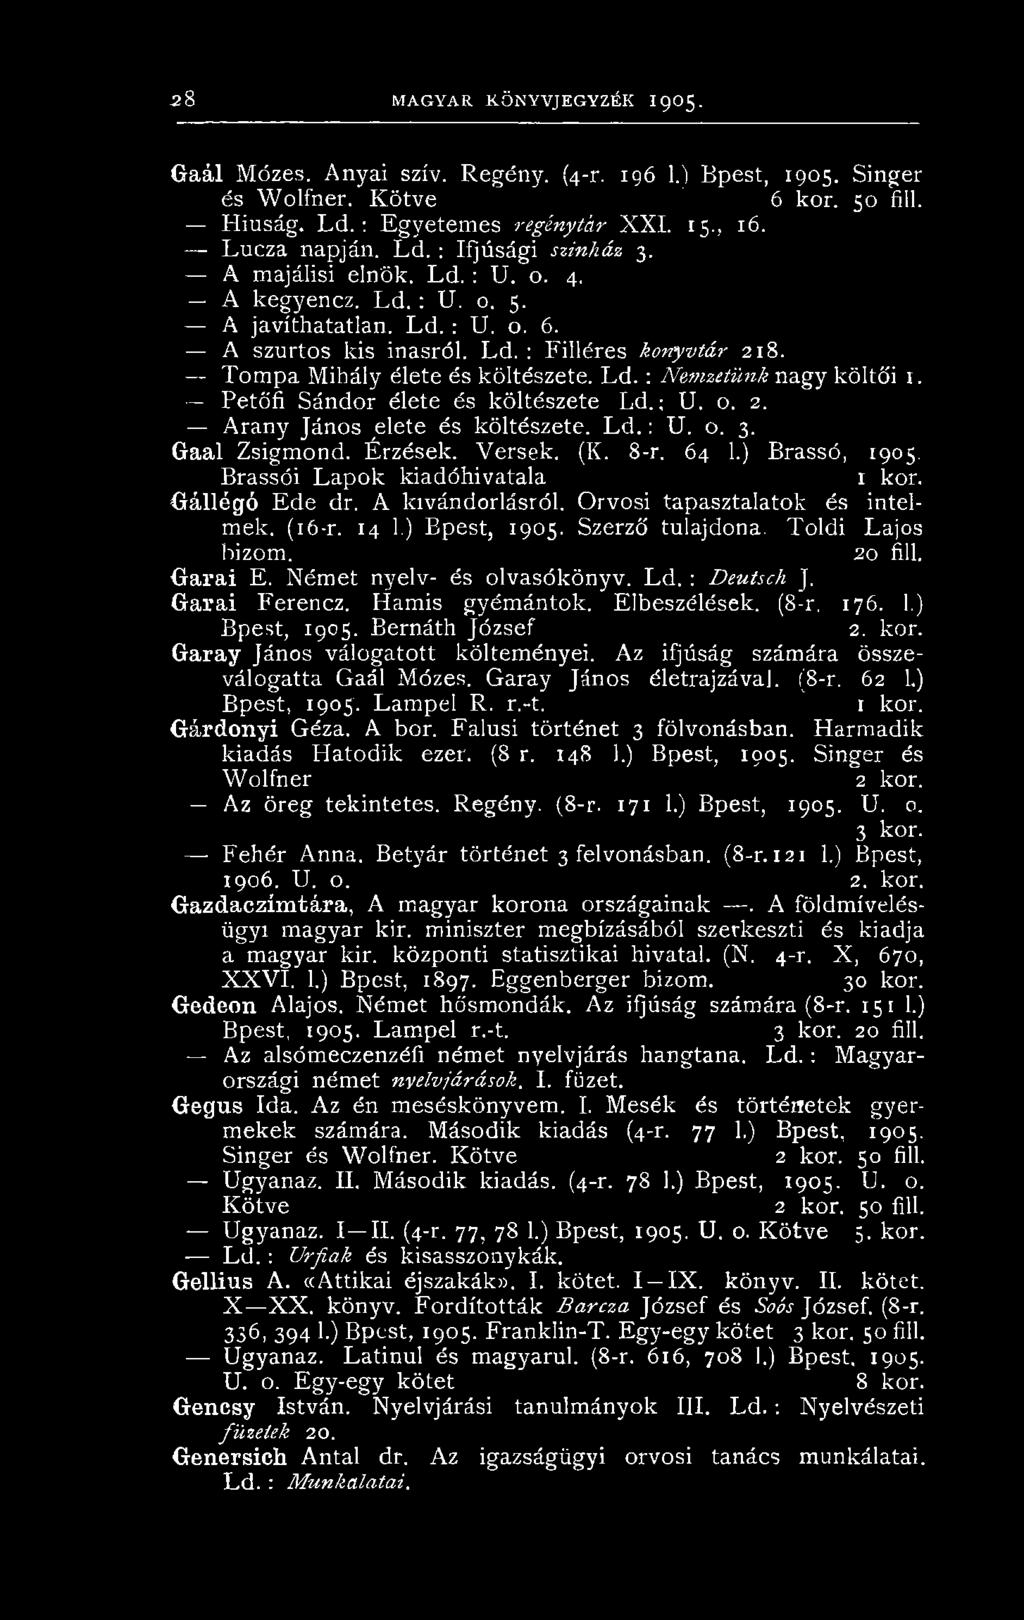 1905-ben megjelent magyar könyvek. - PDF Free Download